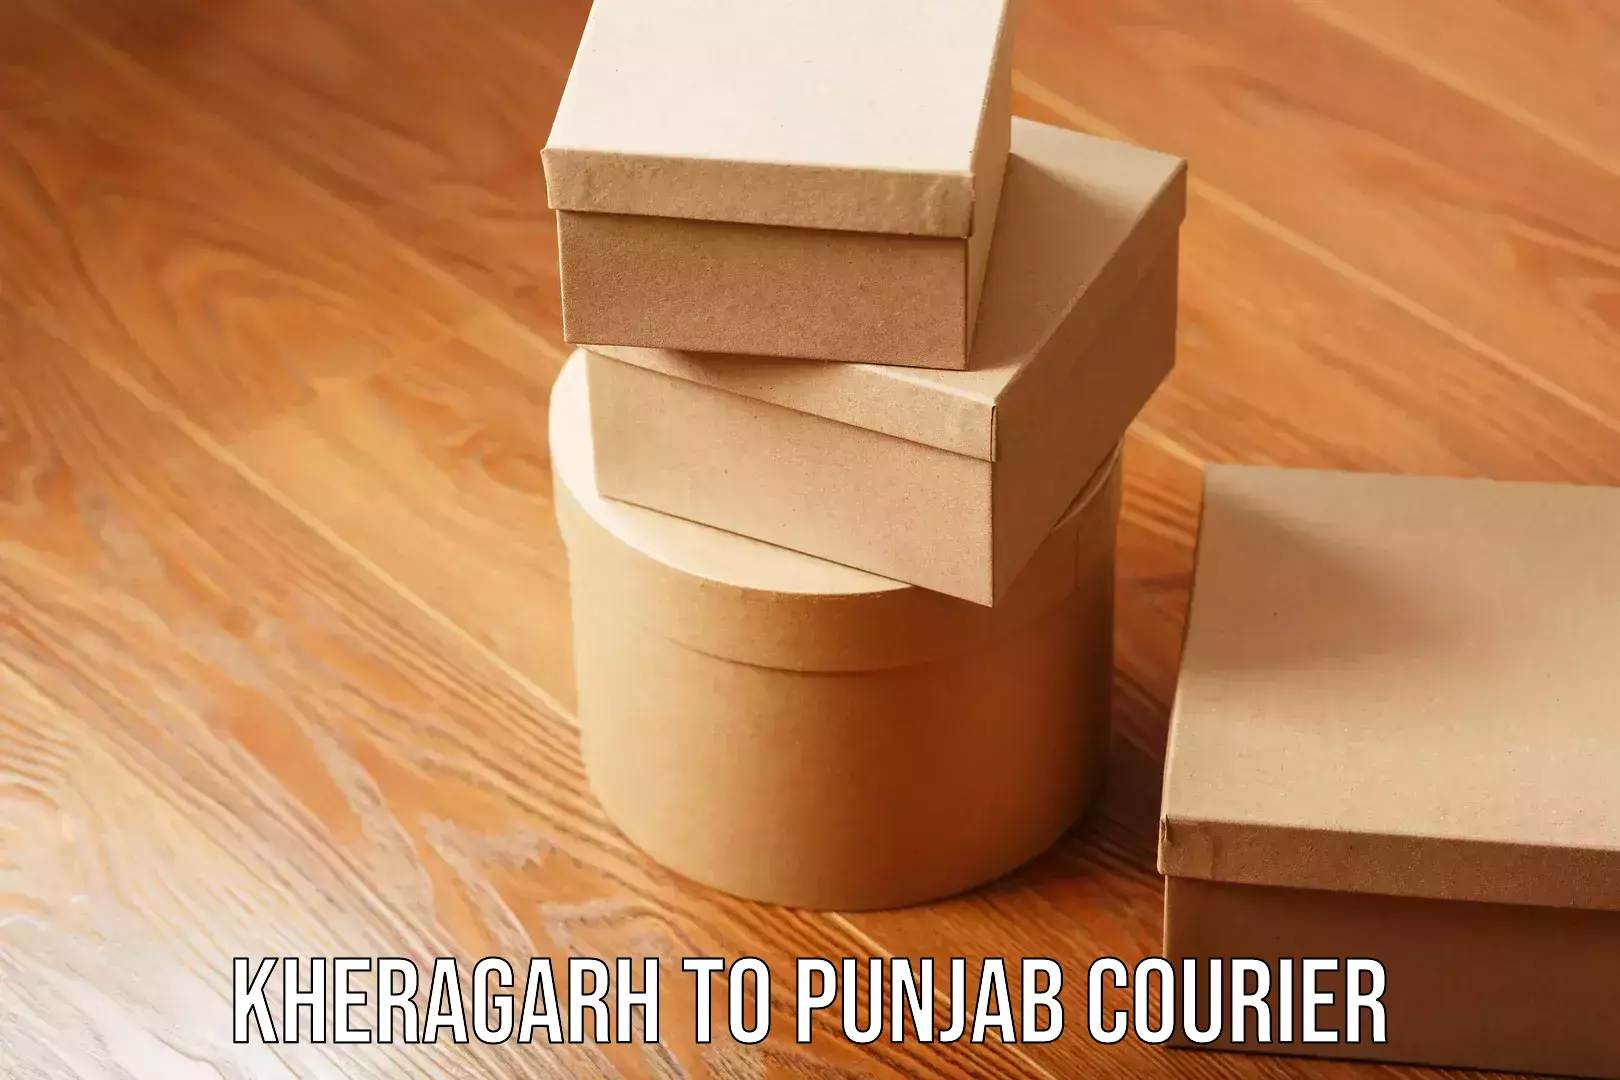 Furniture moving experts Kheragarh to Punjab